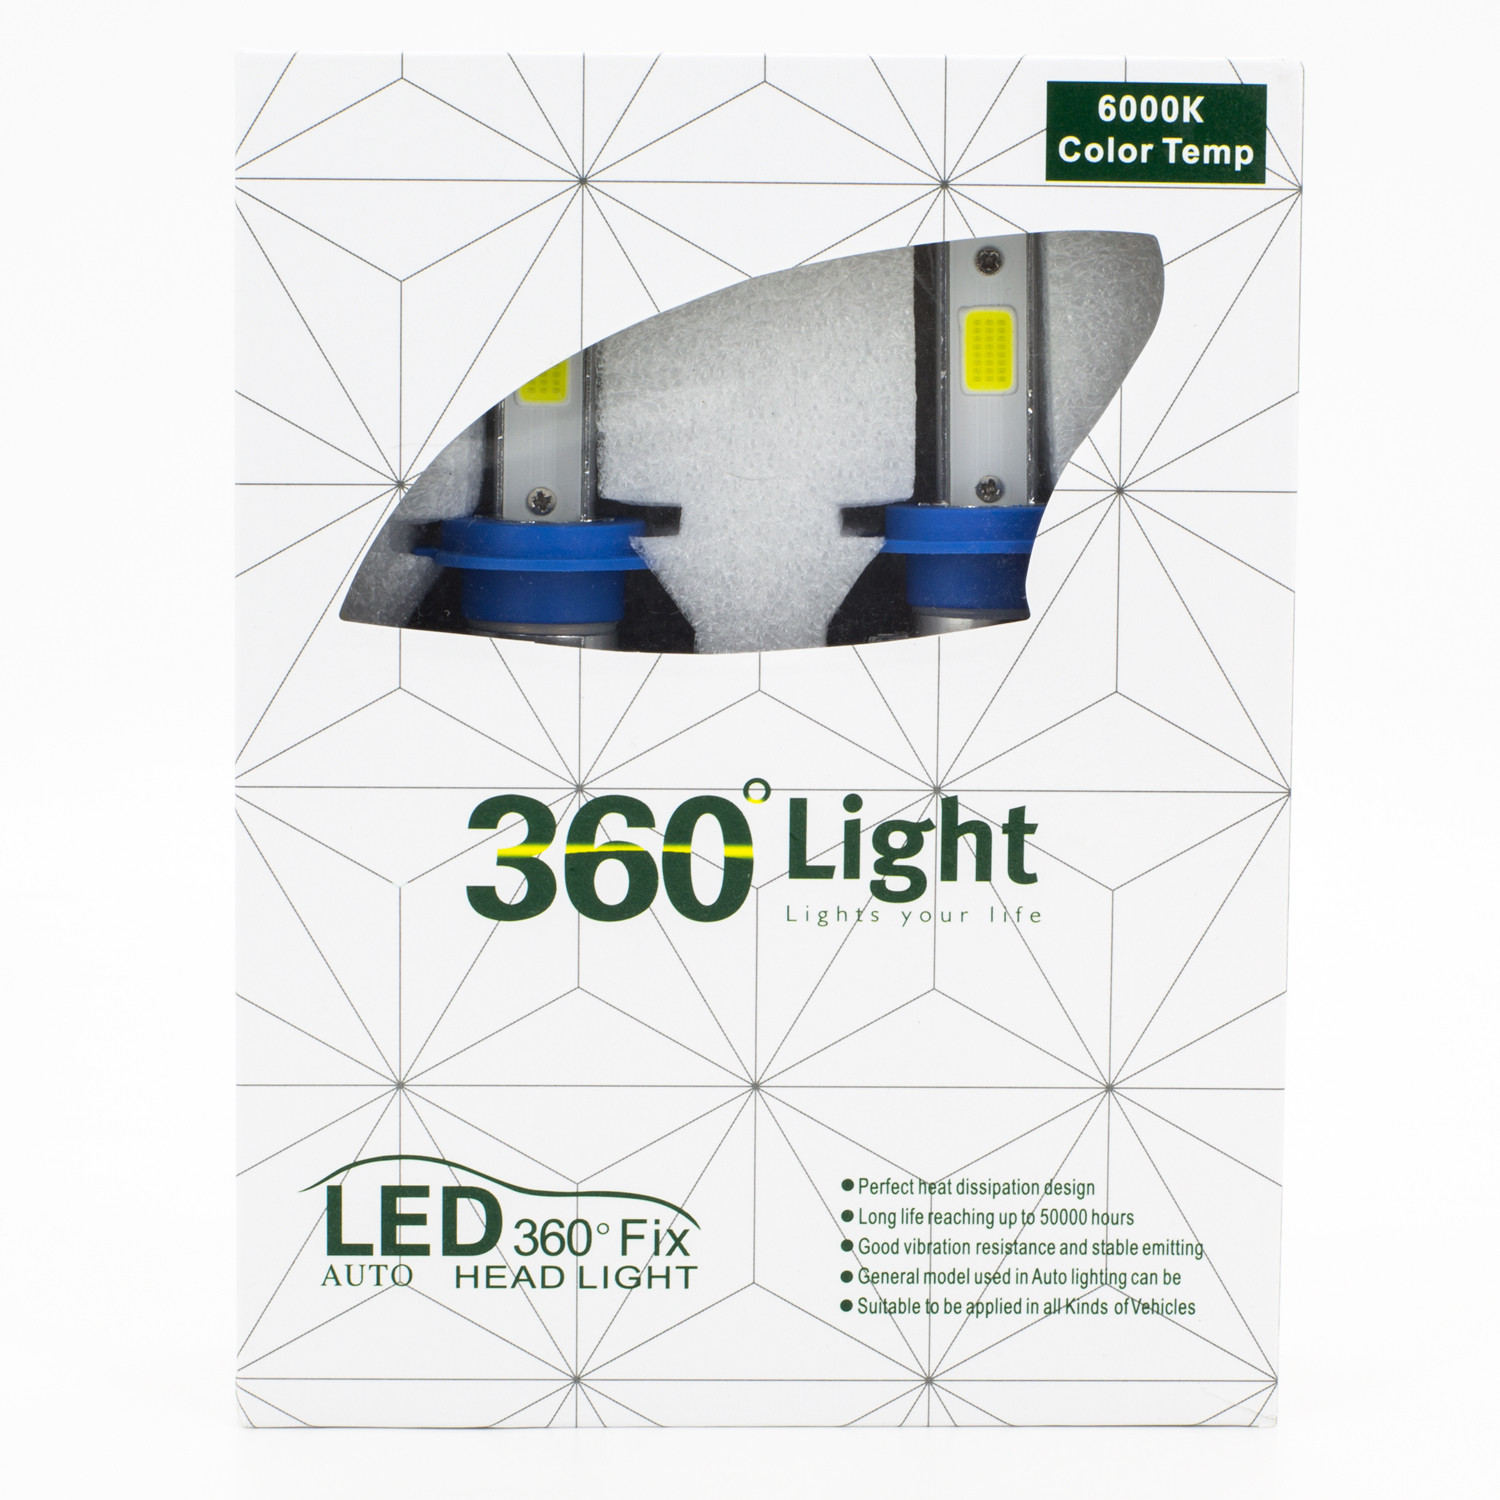 1 H4 LED Lampe für LENTICULAR  Leistungsstarkes 360° Licht 6000